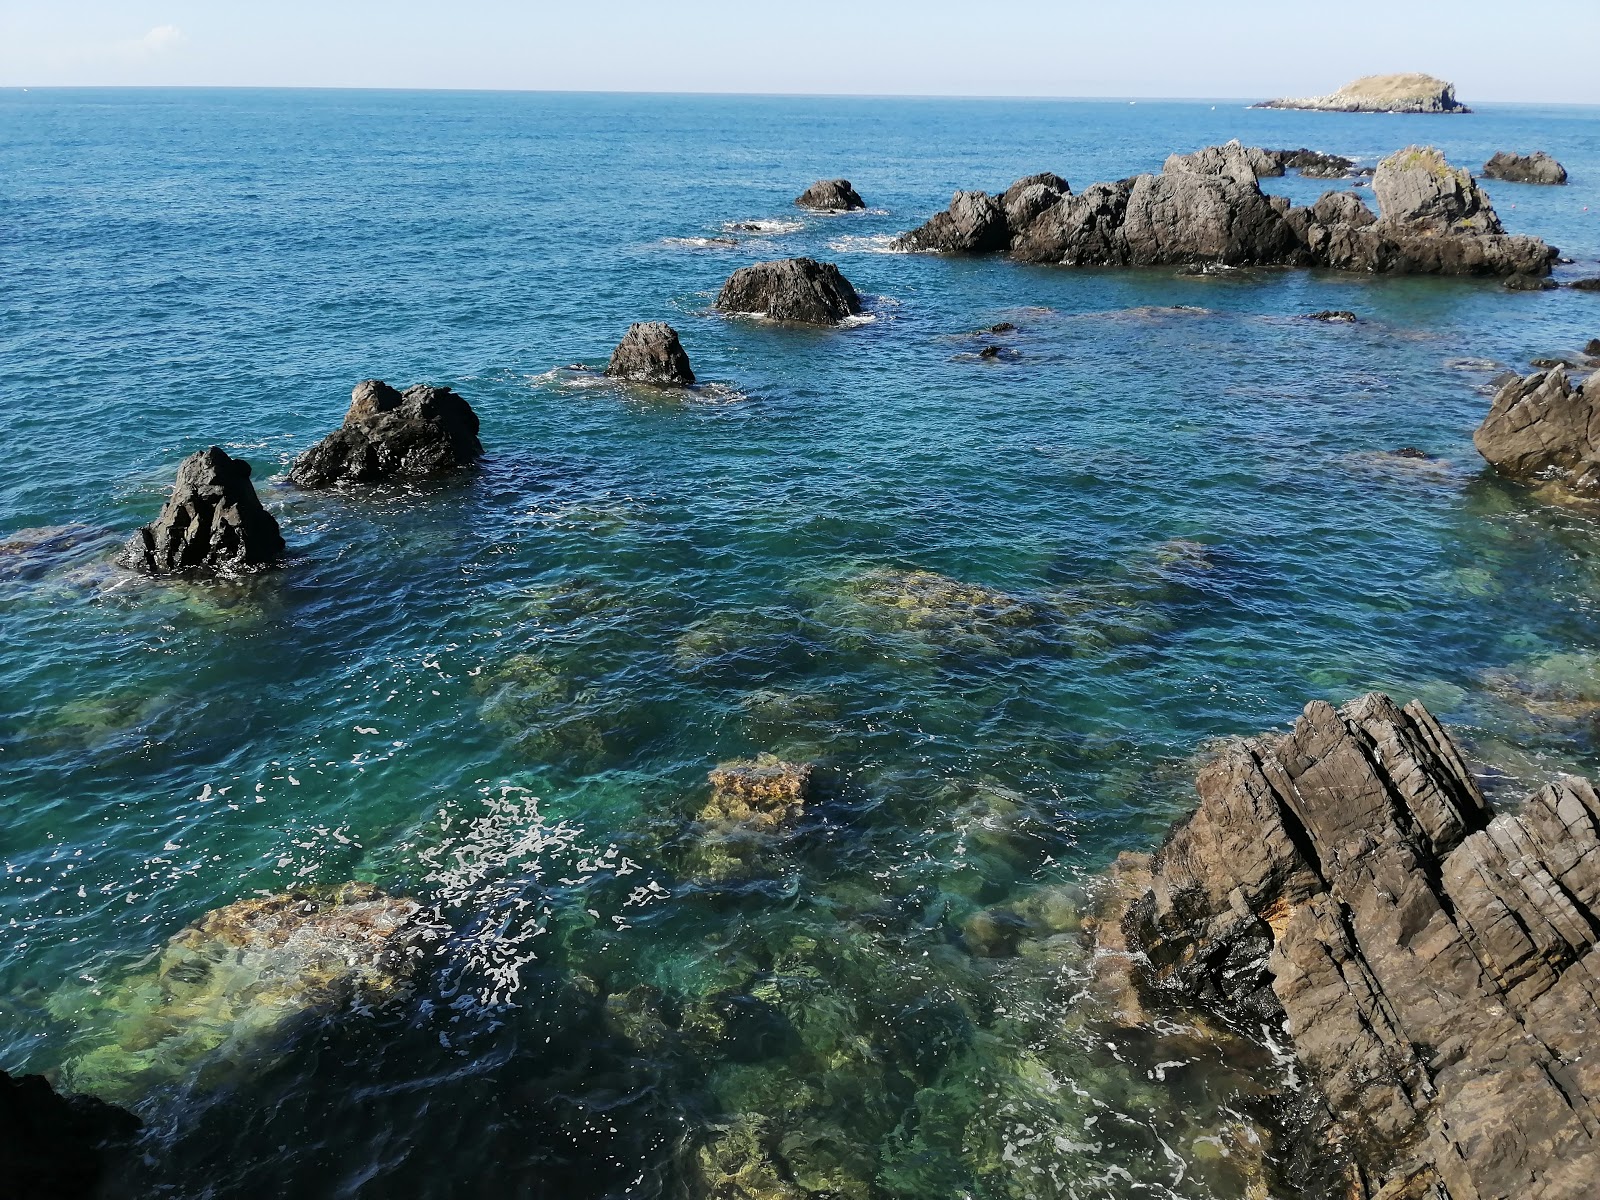 Photo of Spiaggia Illicini located in natural area